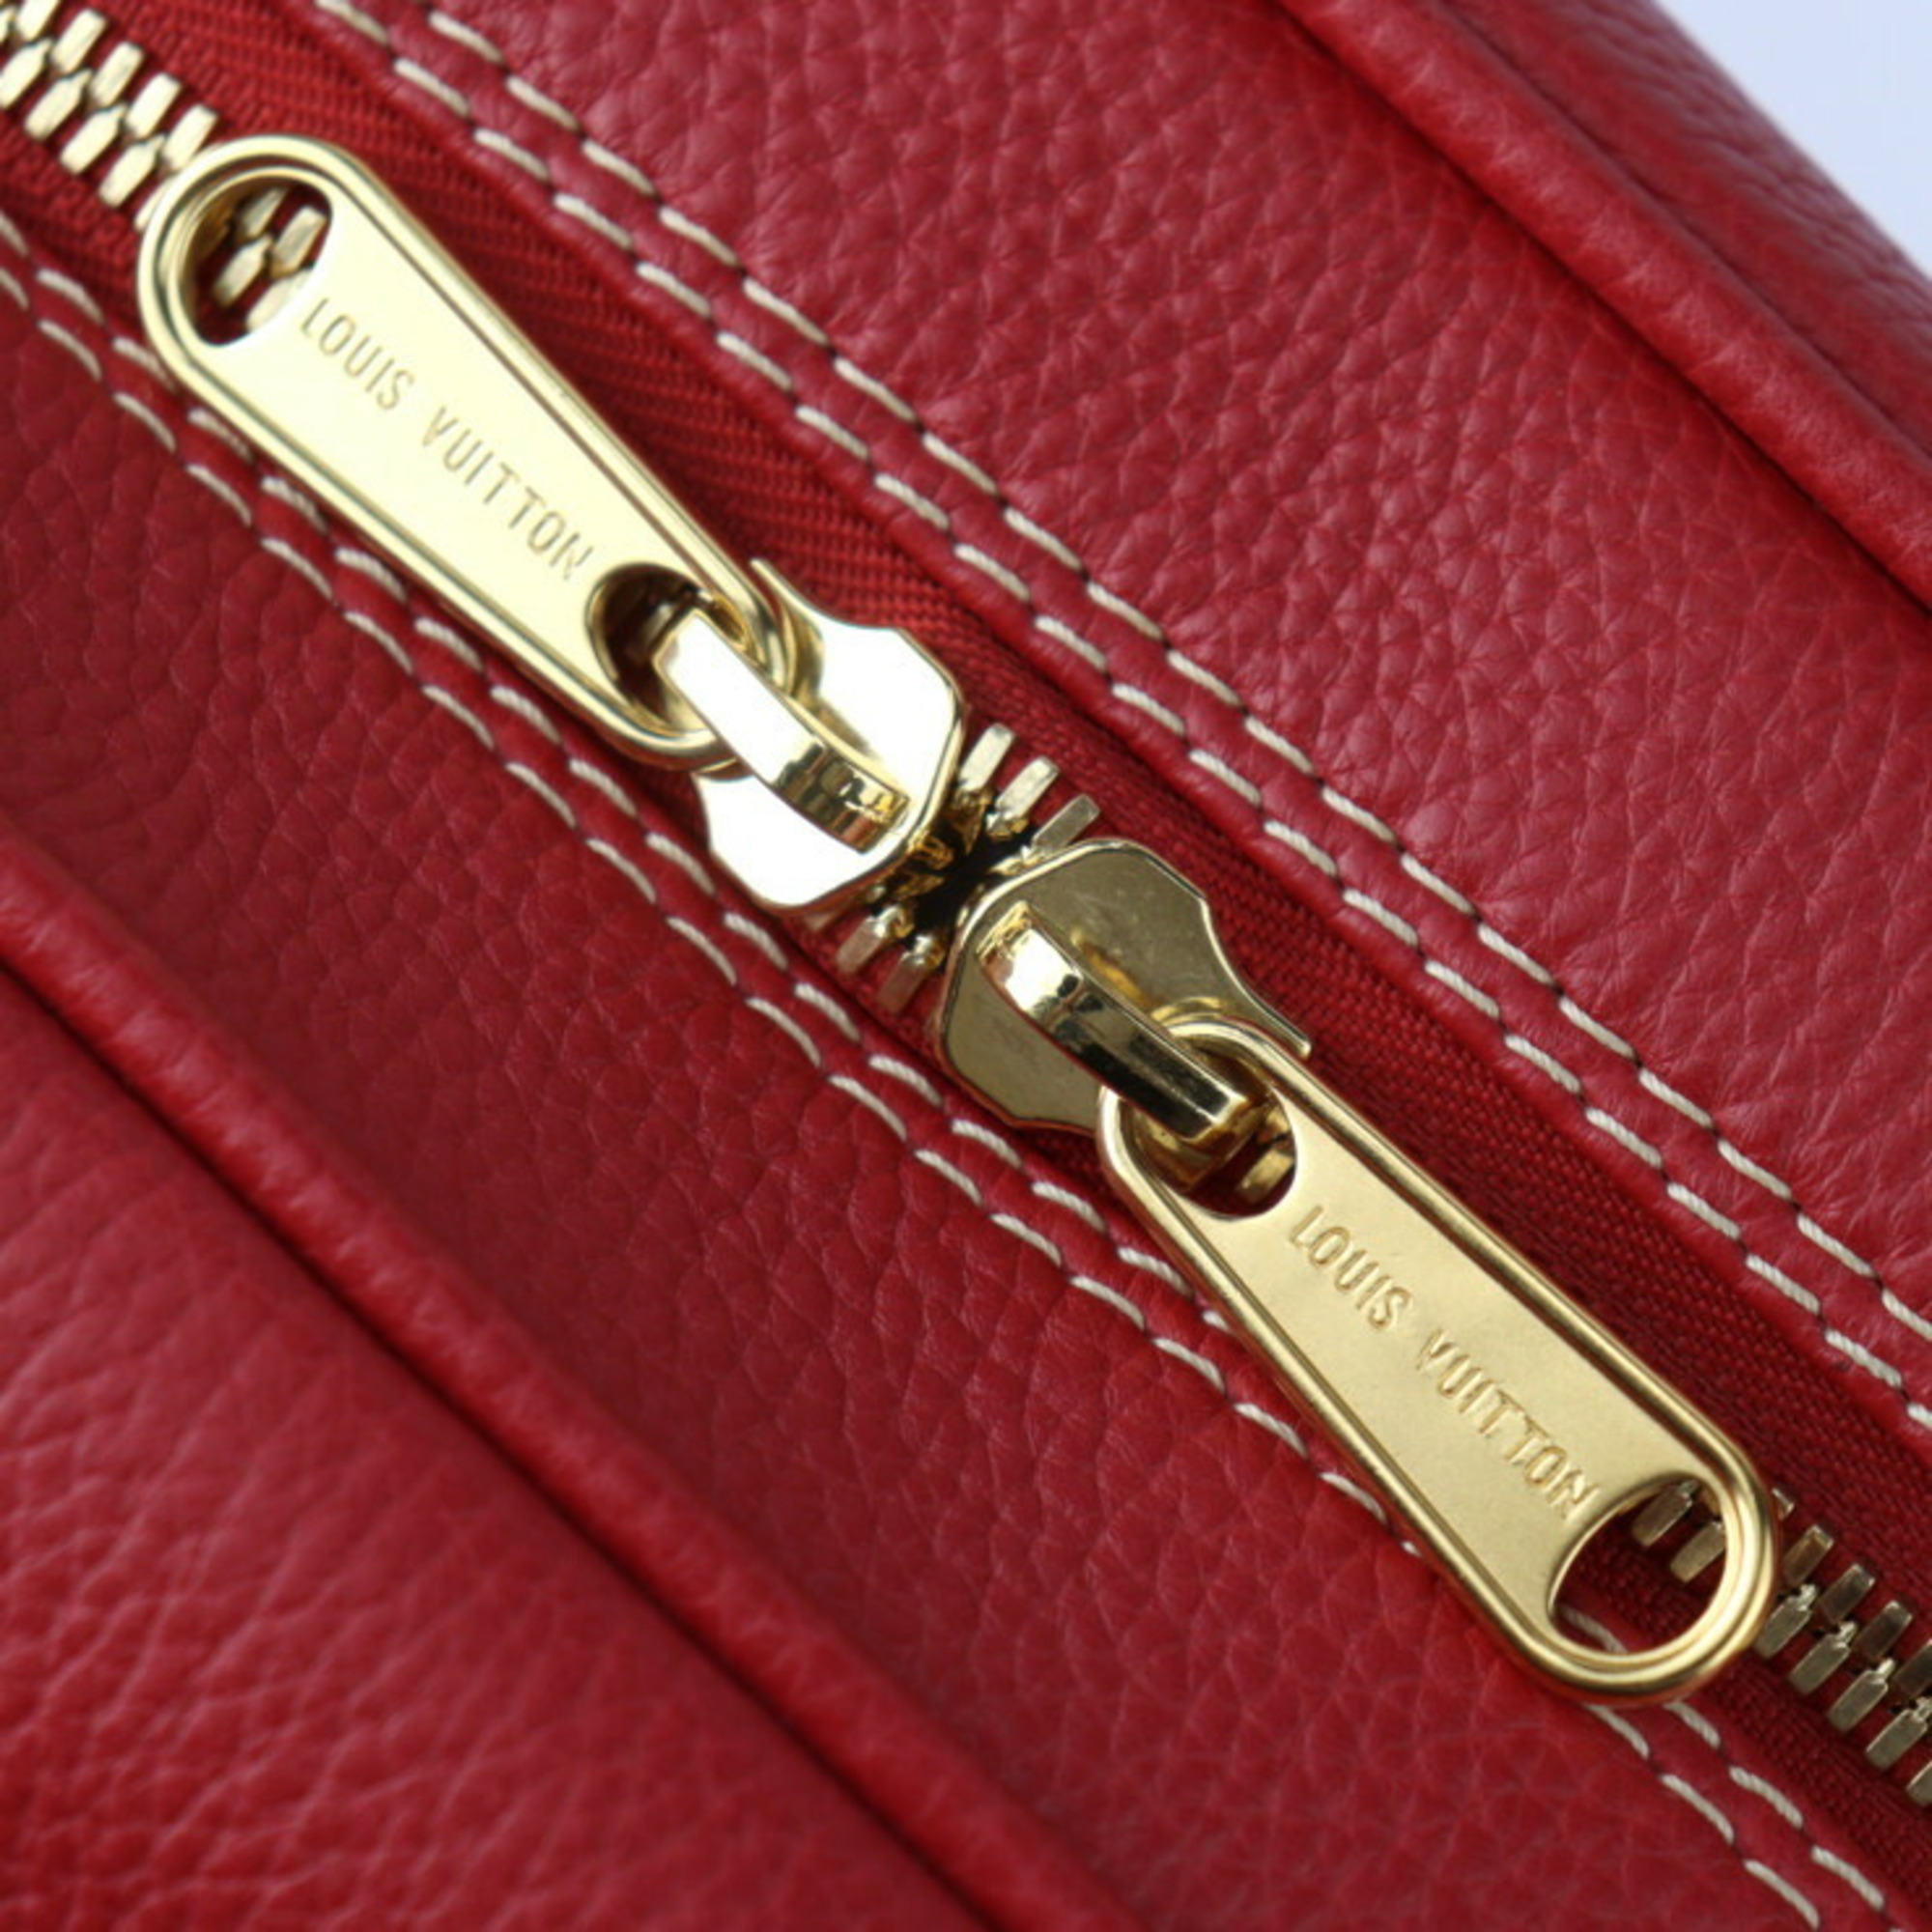 LOUIS VUITTON Louis Vuitton Carryall Boston Bag M95140 Tobago Leather Red White